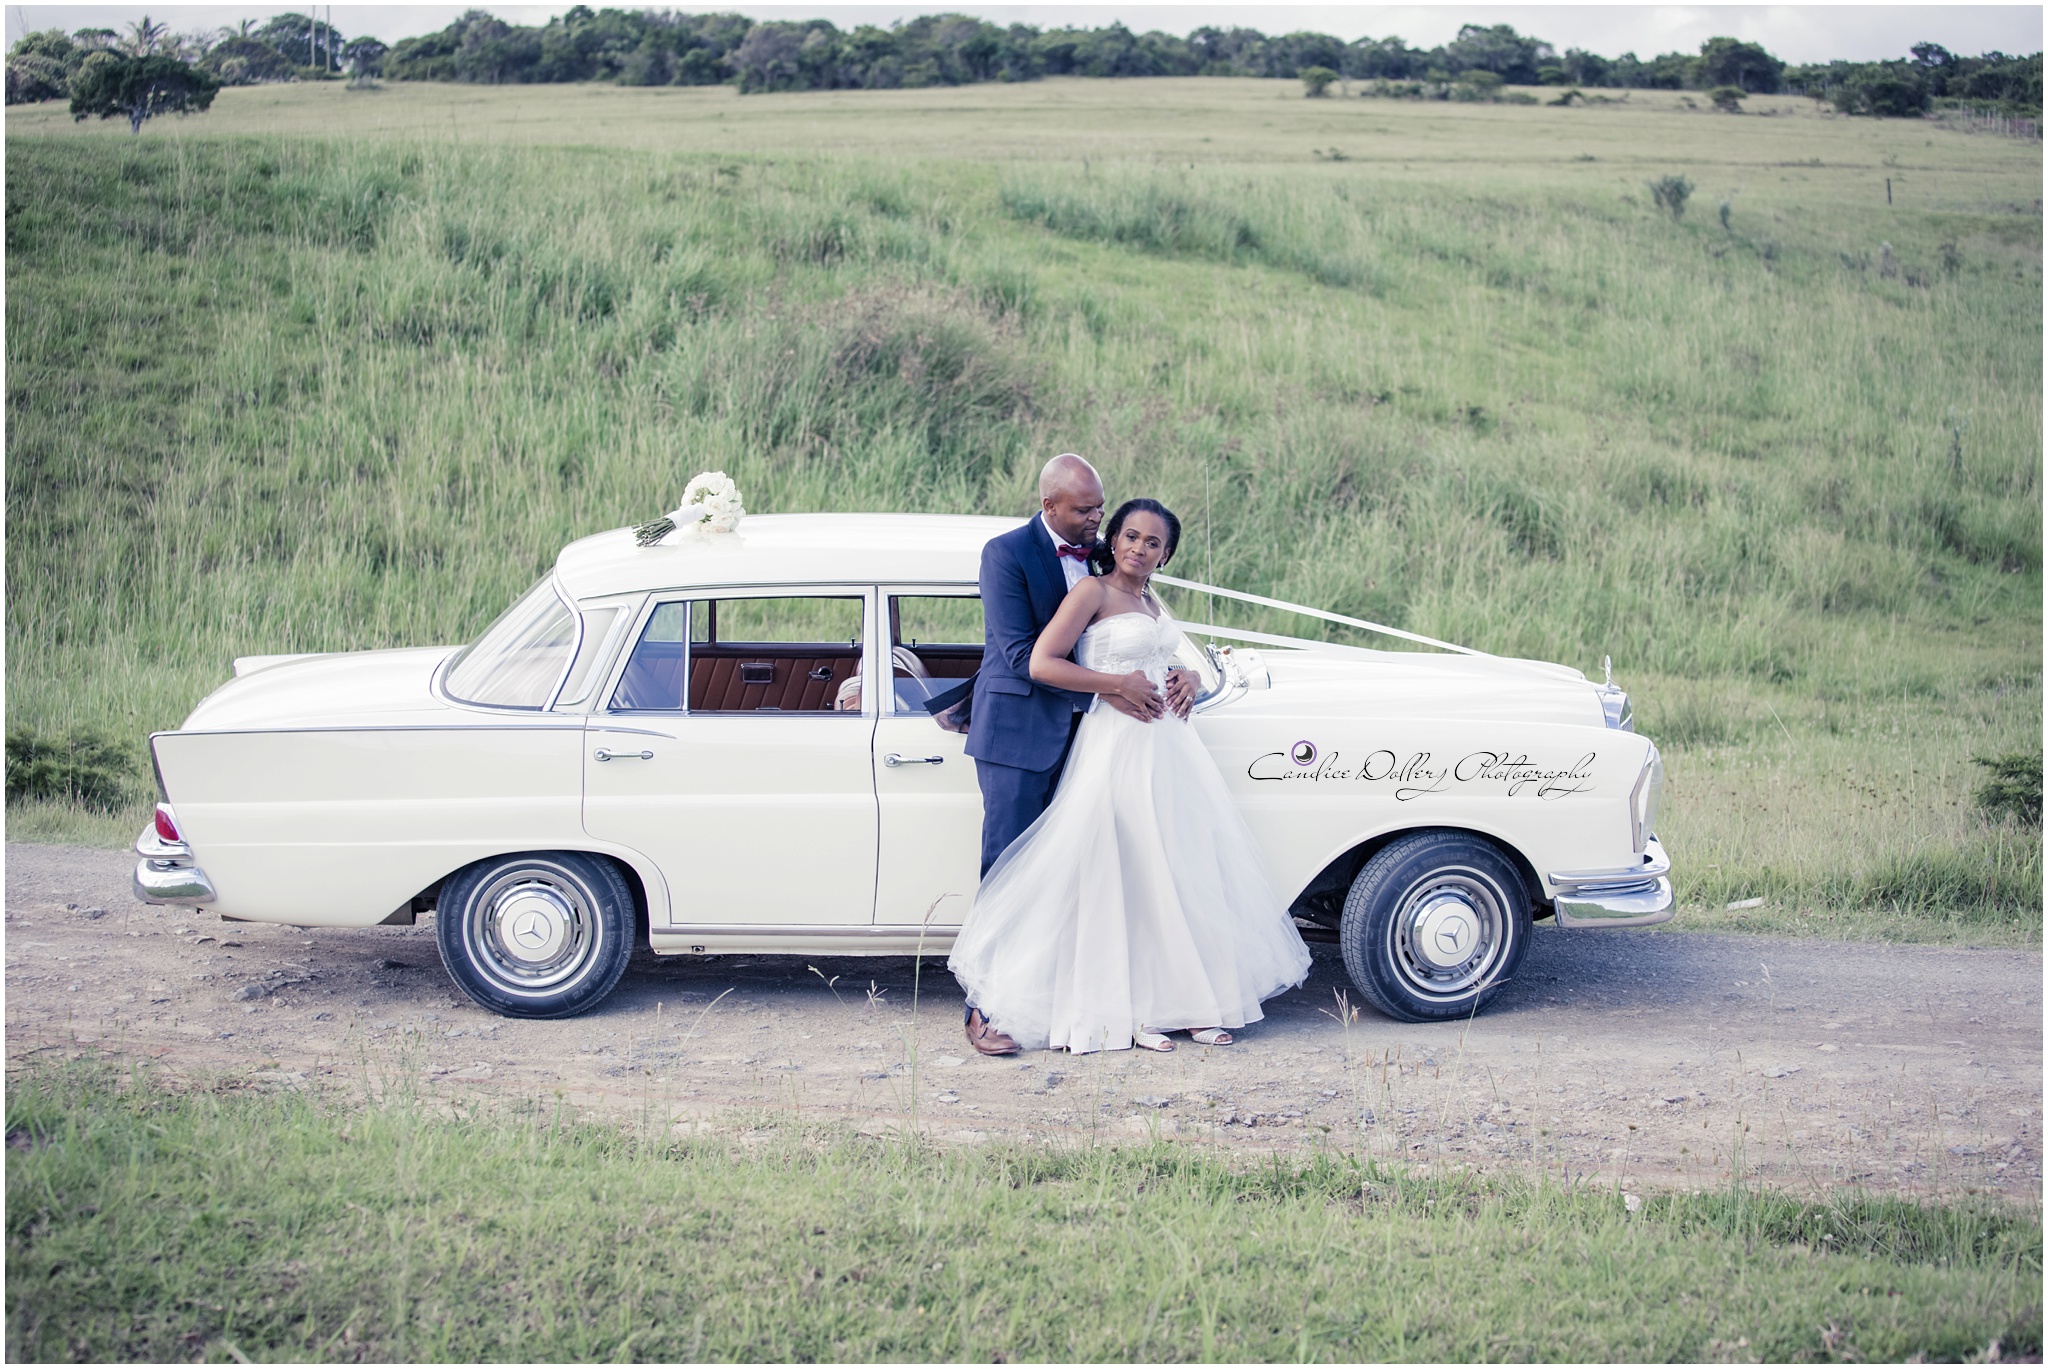 Buyi & Nathi's Wedding - Candice Dollery Photography_8416